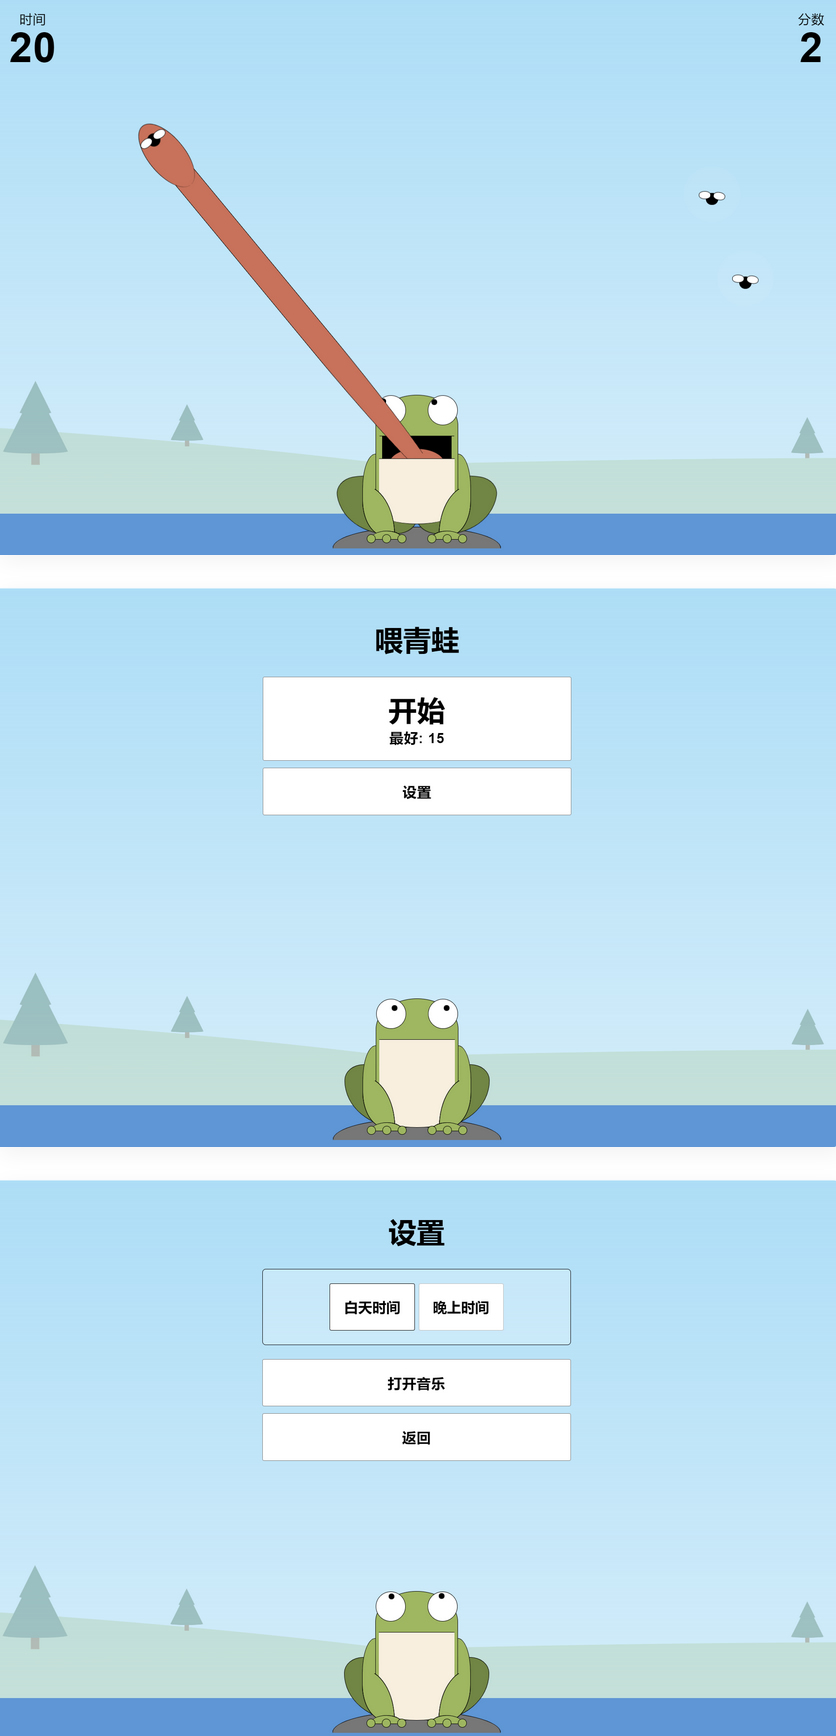 青蛙吃蚊子小游戏源码-自适应手机端-易站站长网